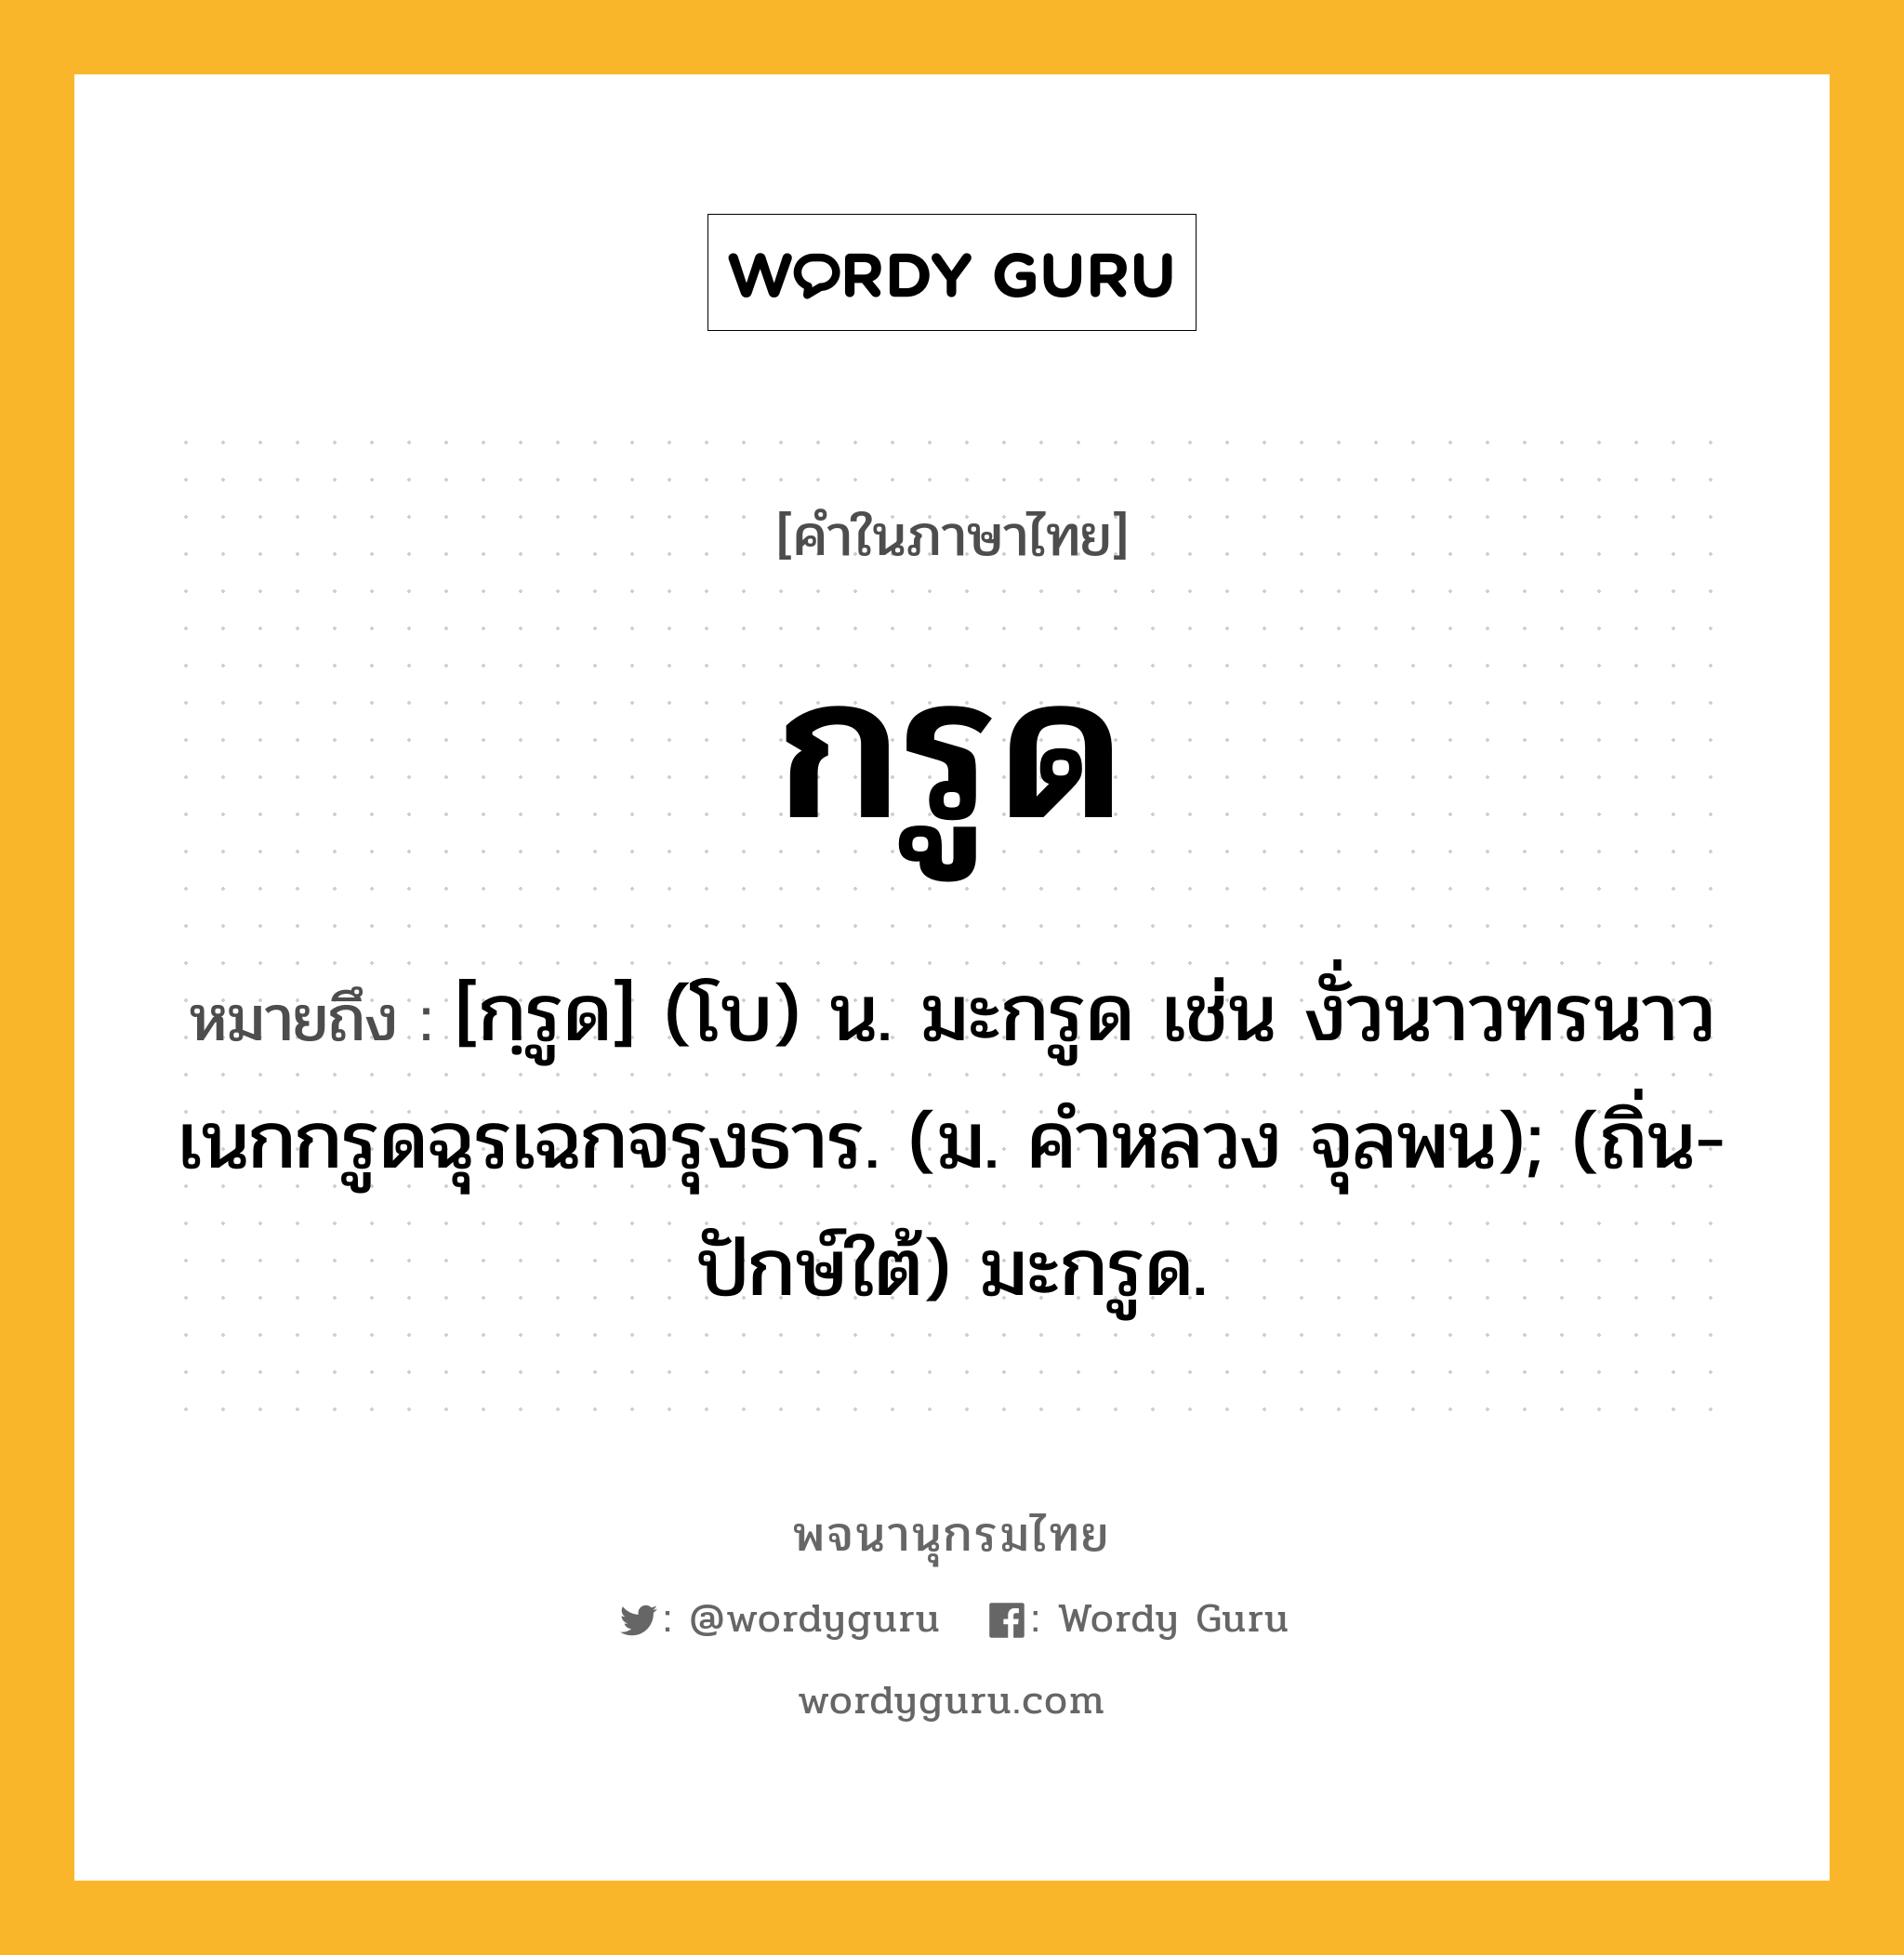 กรูด หมายถึงอะไร?, คำในภาษาไทย กรูด หมายถึง [กฺรูด] (โบ) น. มะกรูด เช่น งั่วนาวทรนาวเนกกรูดฉุรเฉกจรุงธาร. (ม. คําหลวง จุลพน); (ถิ่น-ปักษ์ใต้) มะกรูด.